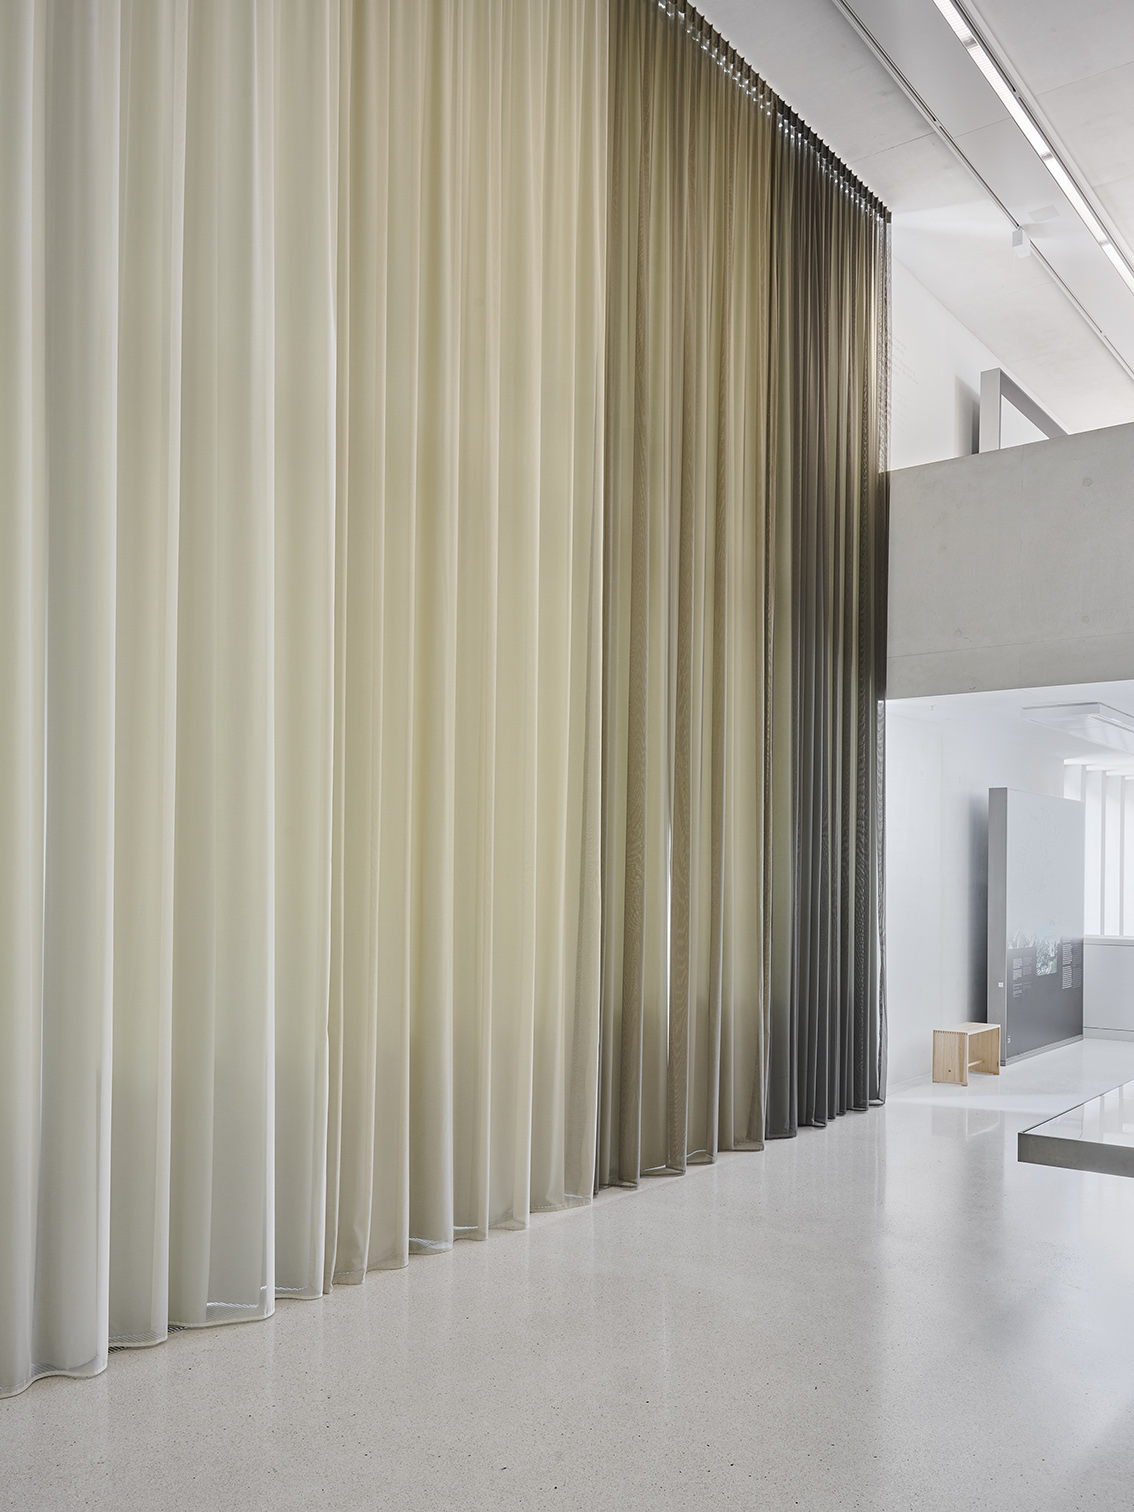 Stoffgardinen grau weiss beige braun, böhmler Einrichtungshaus München, Objekteinrichtung